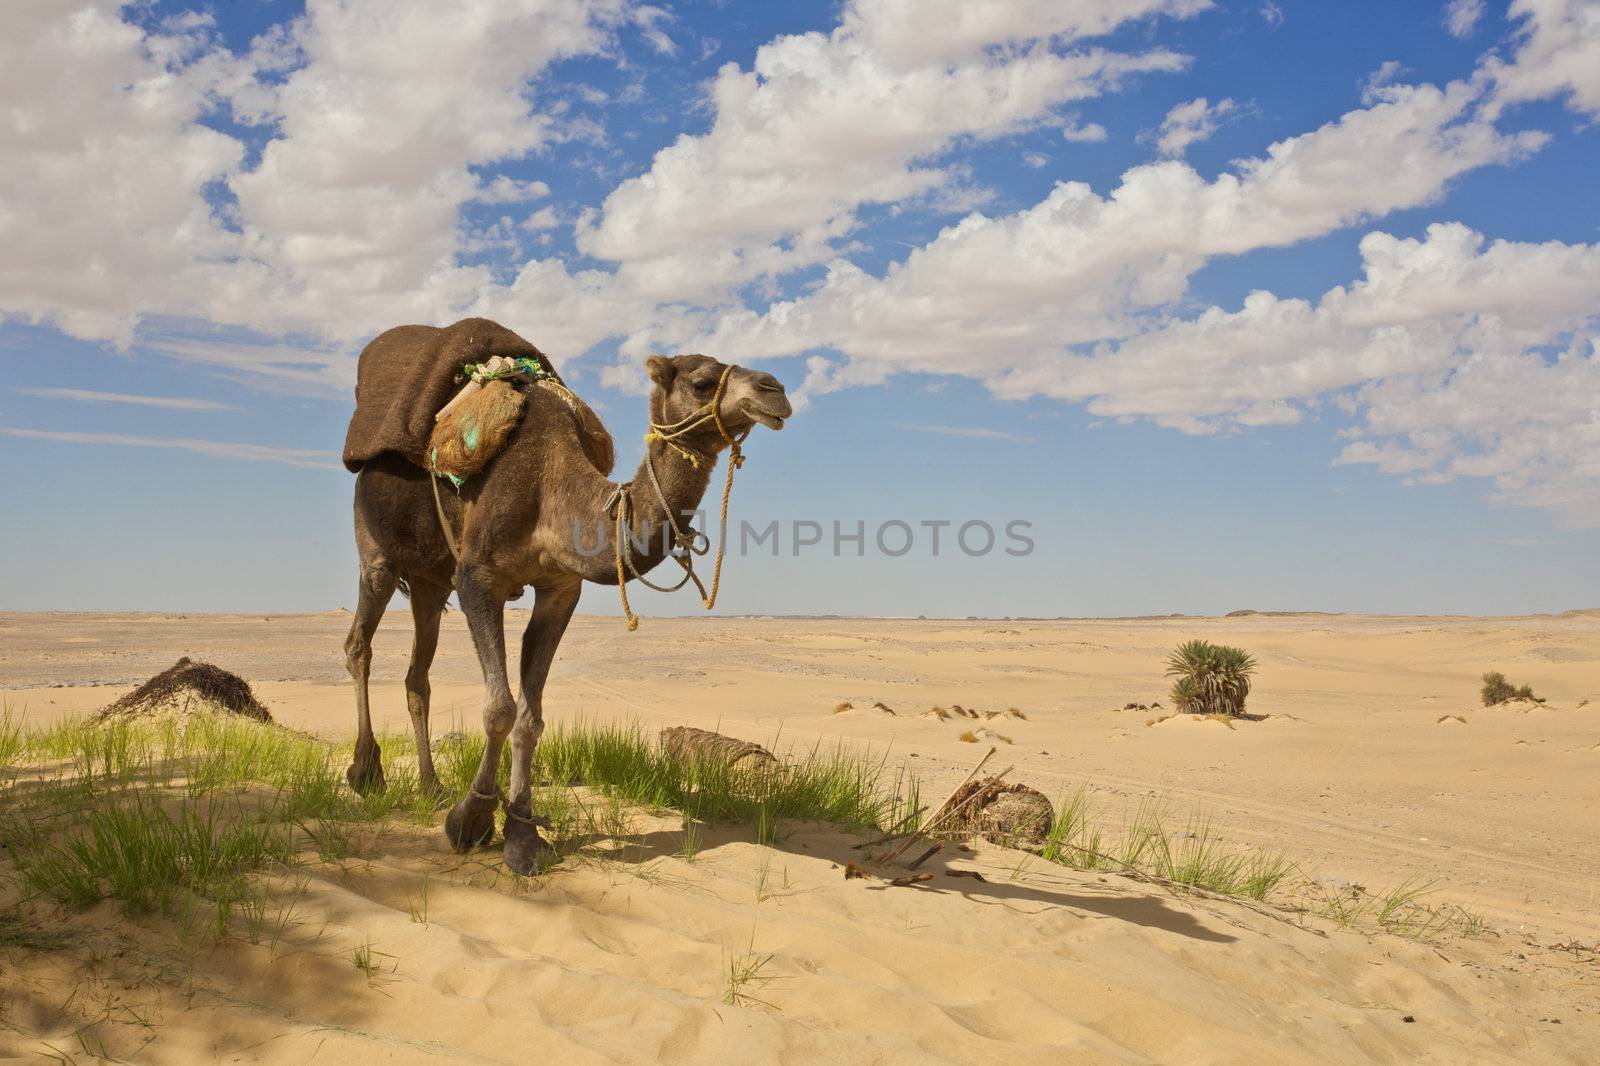 Camel in the Sahara by johanelzenga